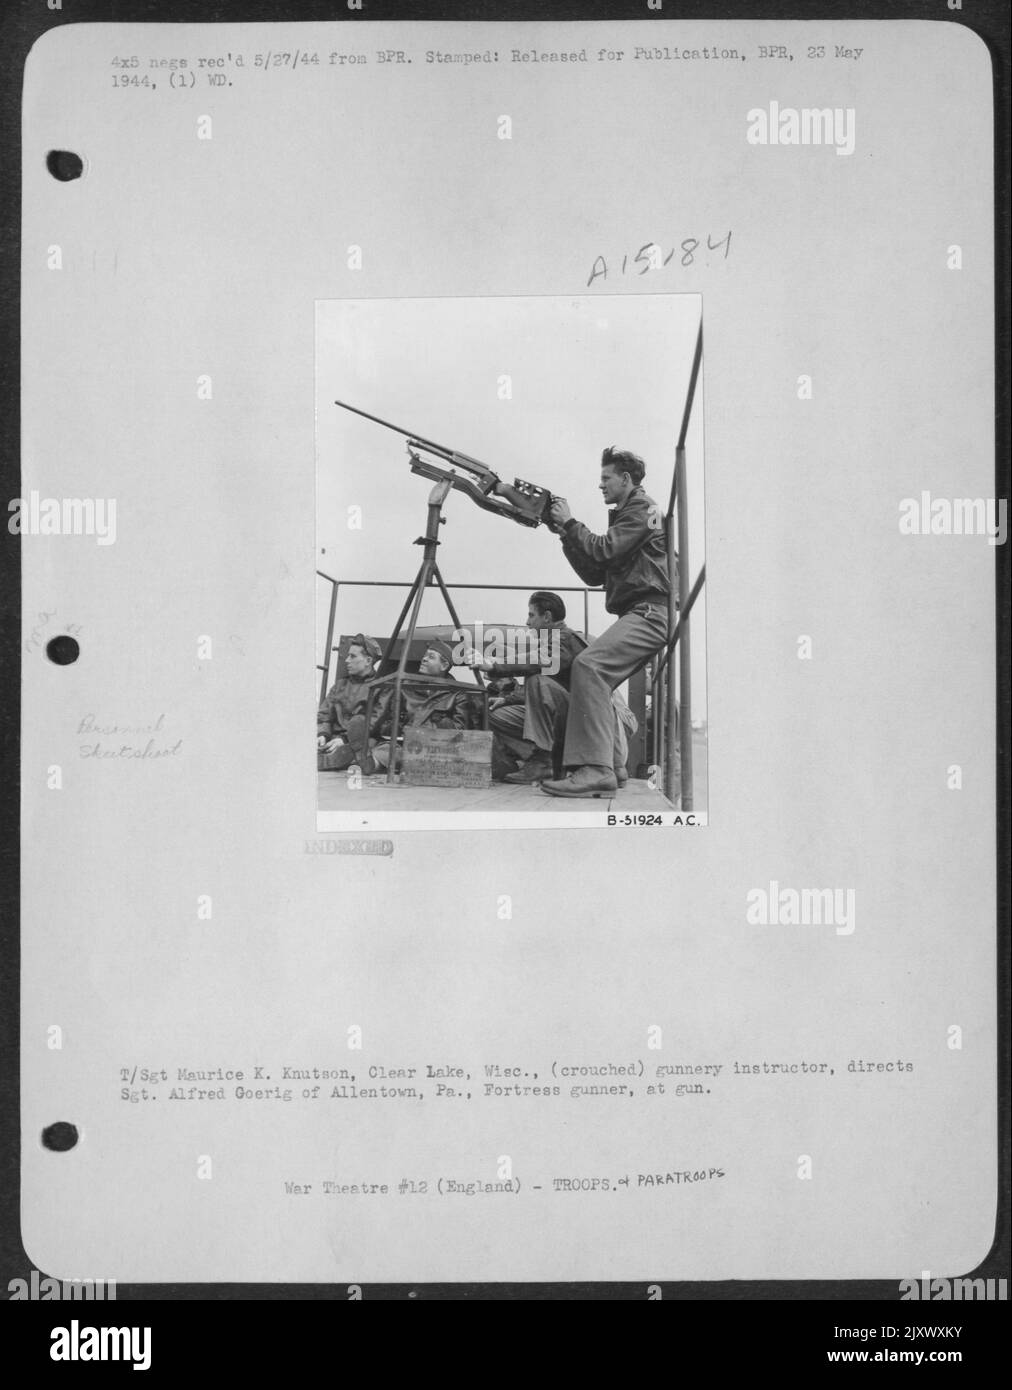 T/Sgt. Maurice K. Knutson, Clear Lake, Wisc., (accovacciato) istruttore di armi da fuoco, dirige Sgt. Alfred Goerig di Allentown, Pa., tiratore, a pistola. Foto Stock